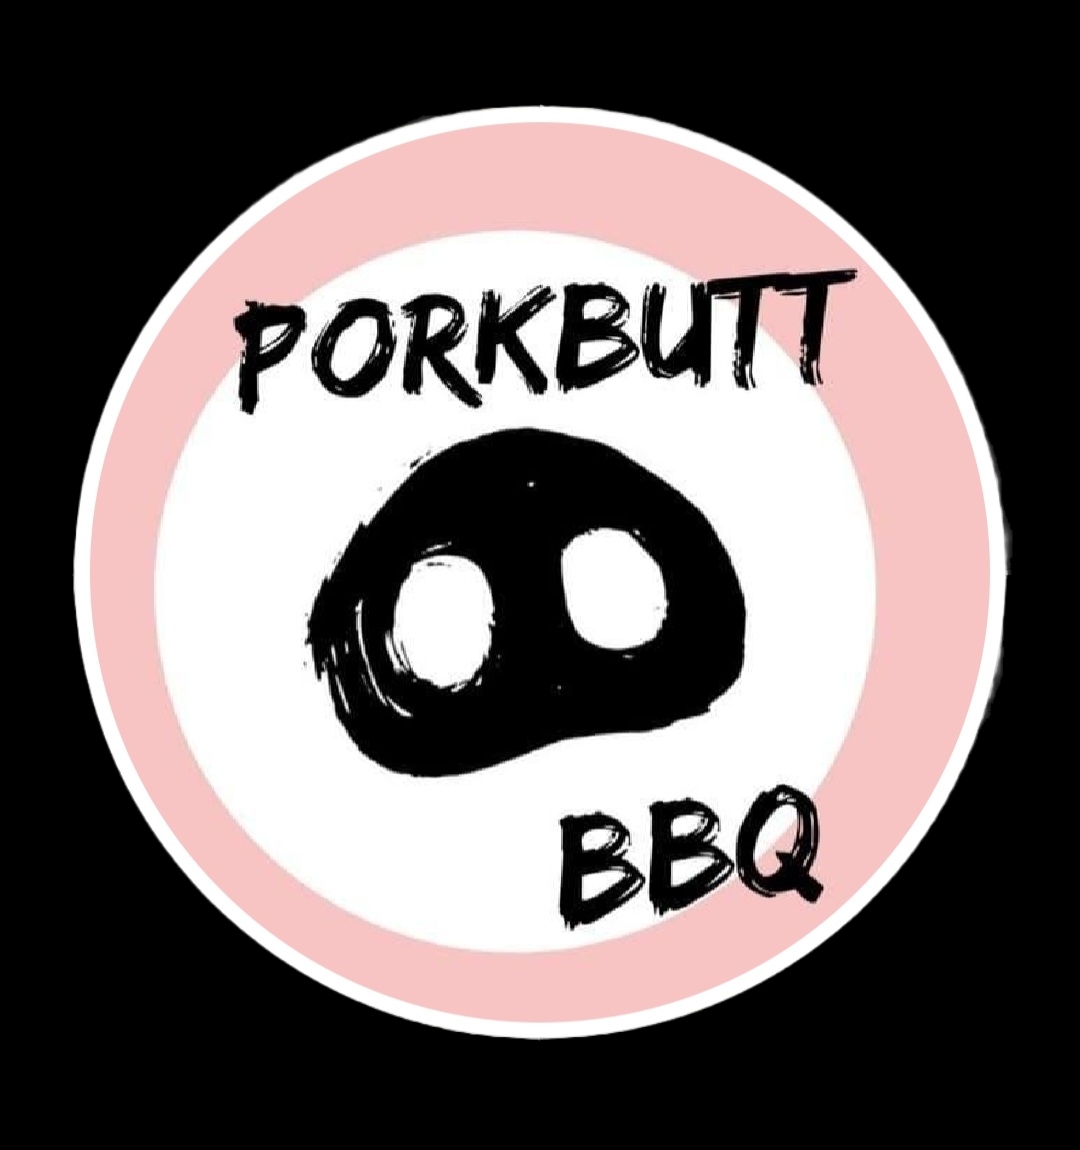 Porkbutt BBQ gluten-free menu